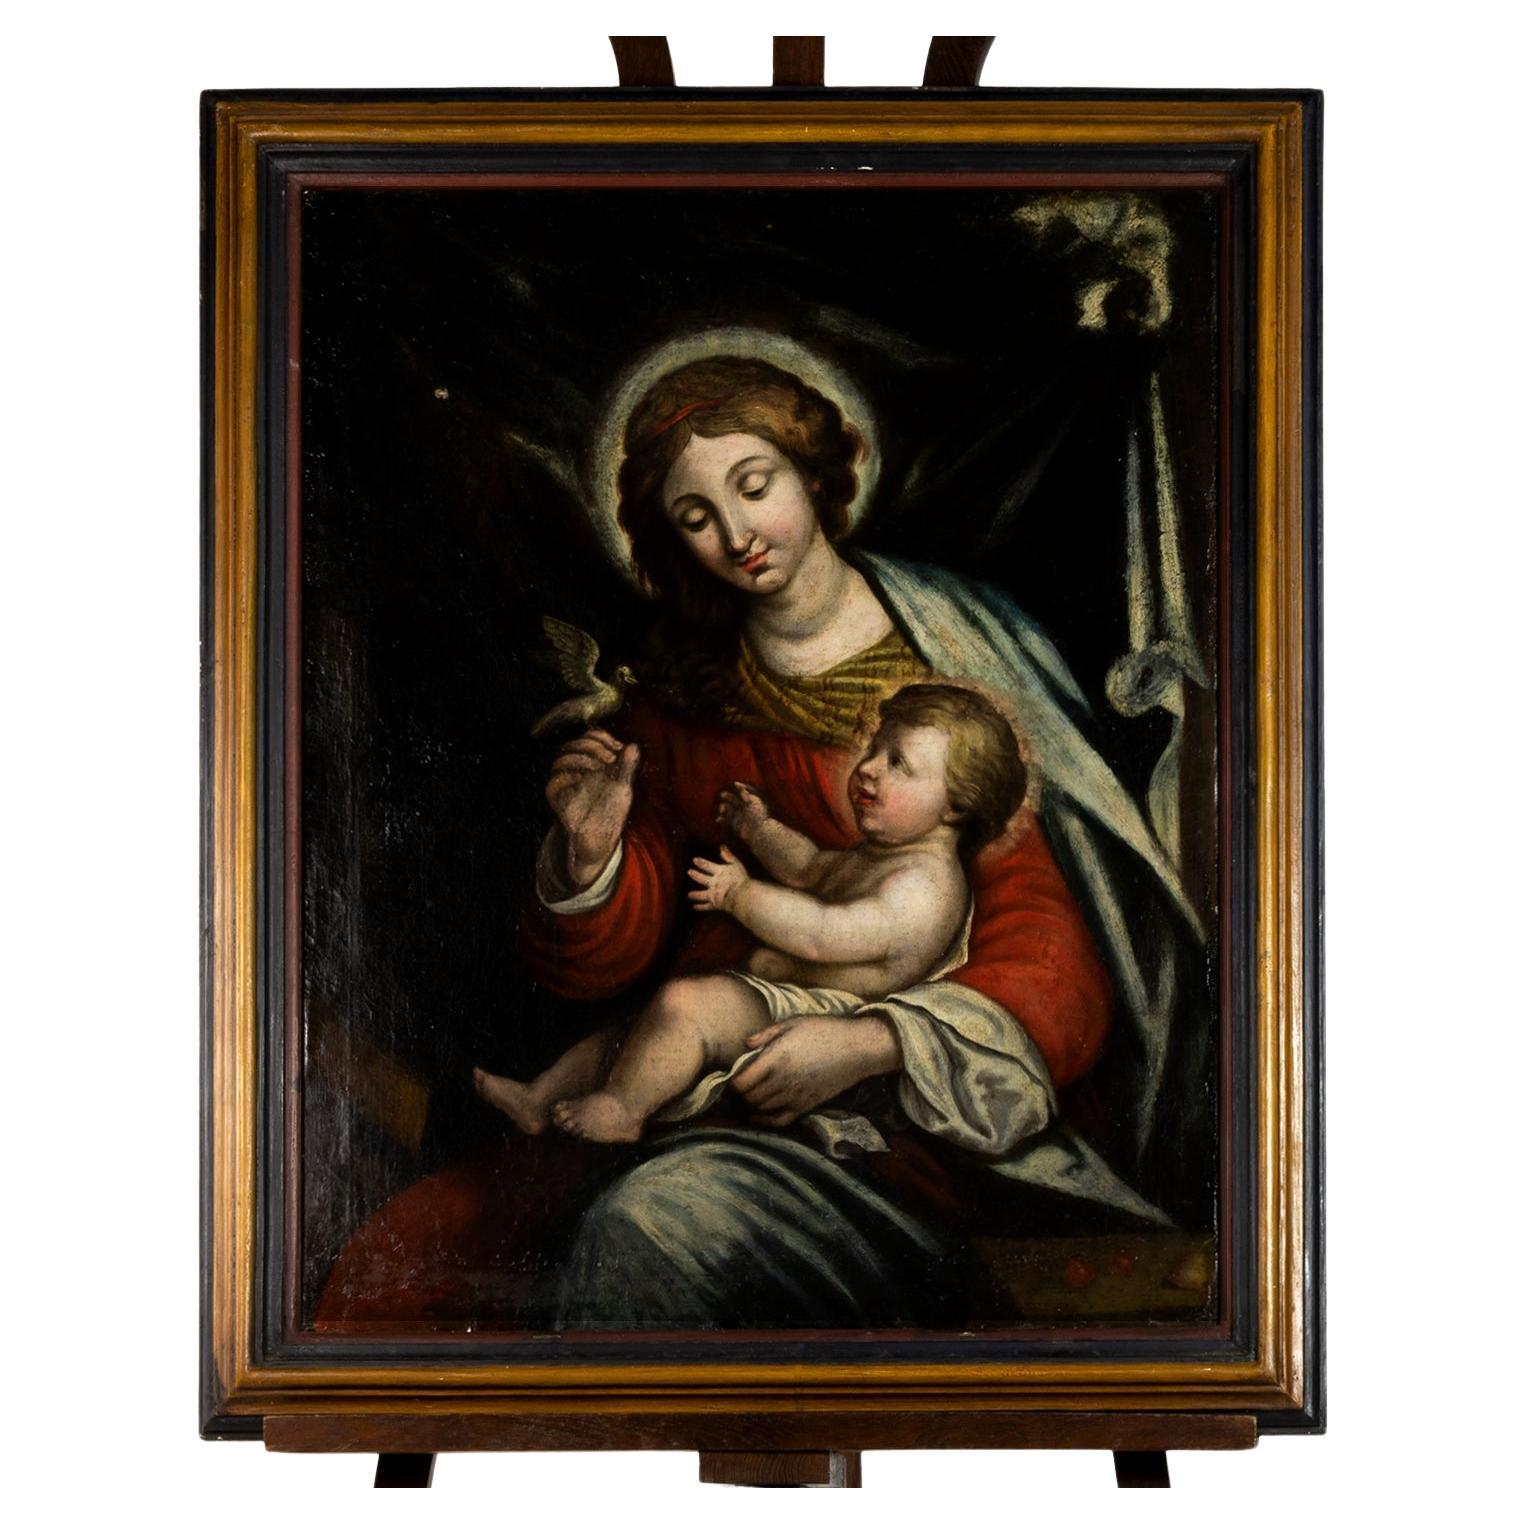 Ein Renaissance-Ölgemälde der Madonna des Friedens, Maria mit Jesus Christus, dem Friedensfürsten auf dem Arm in einem dunklen Hintergrund, rote und grüne Gewänder, die Mutter ist dargestellt  Sie hält eine Taube (ein Symbol des Friedens) in der